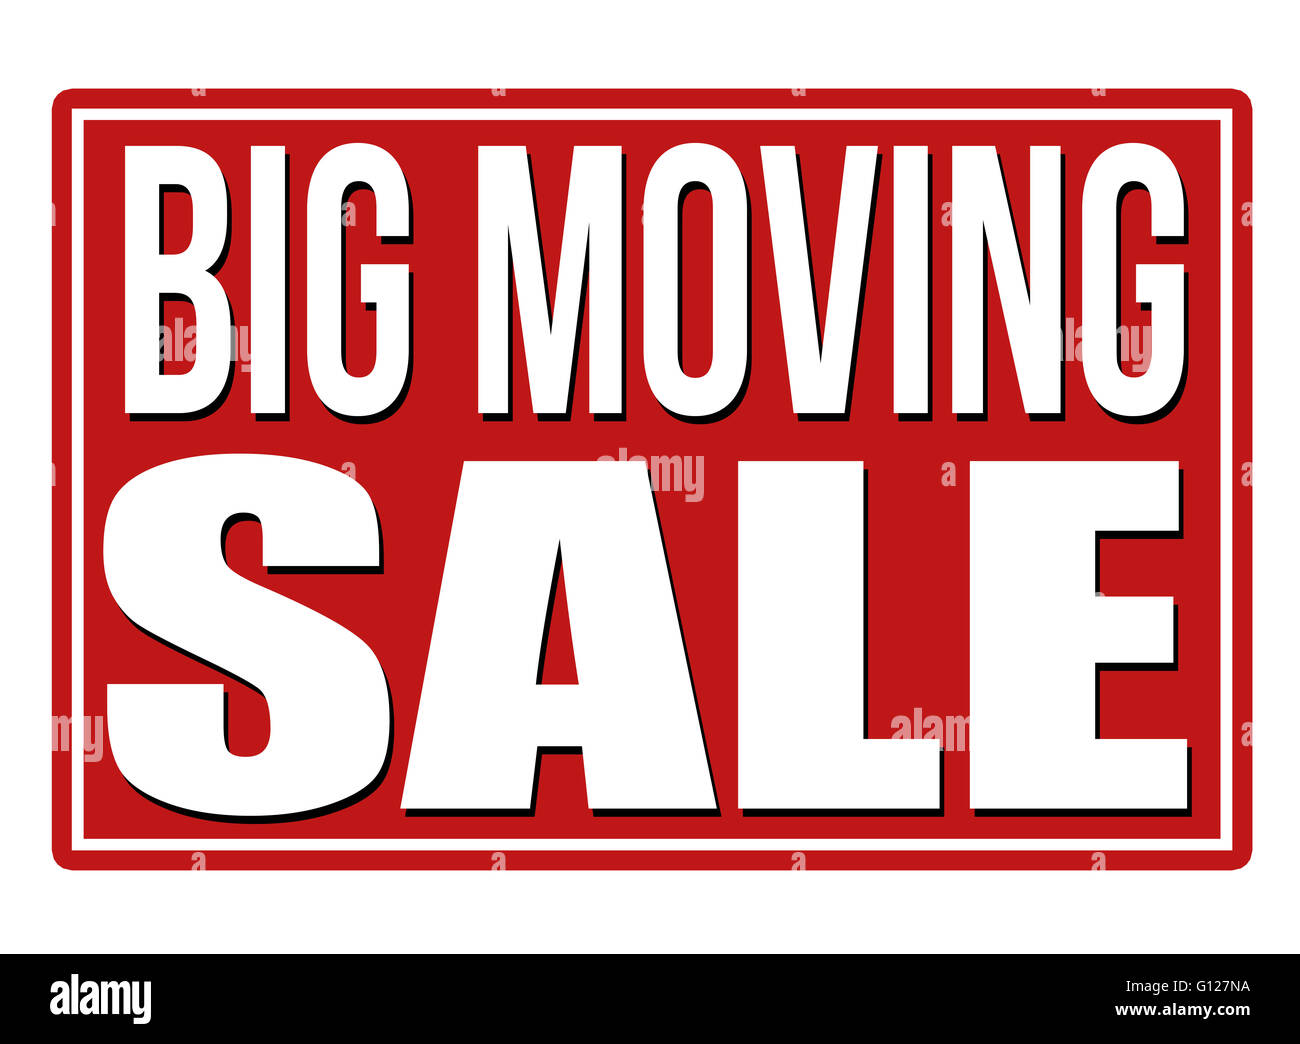 Großen beweglichen roten Verkaufsschild isoliert auf einem weißen Hintergrund, Vektor-illustration Stockfoto